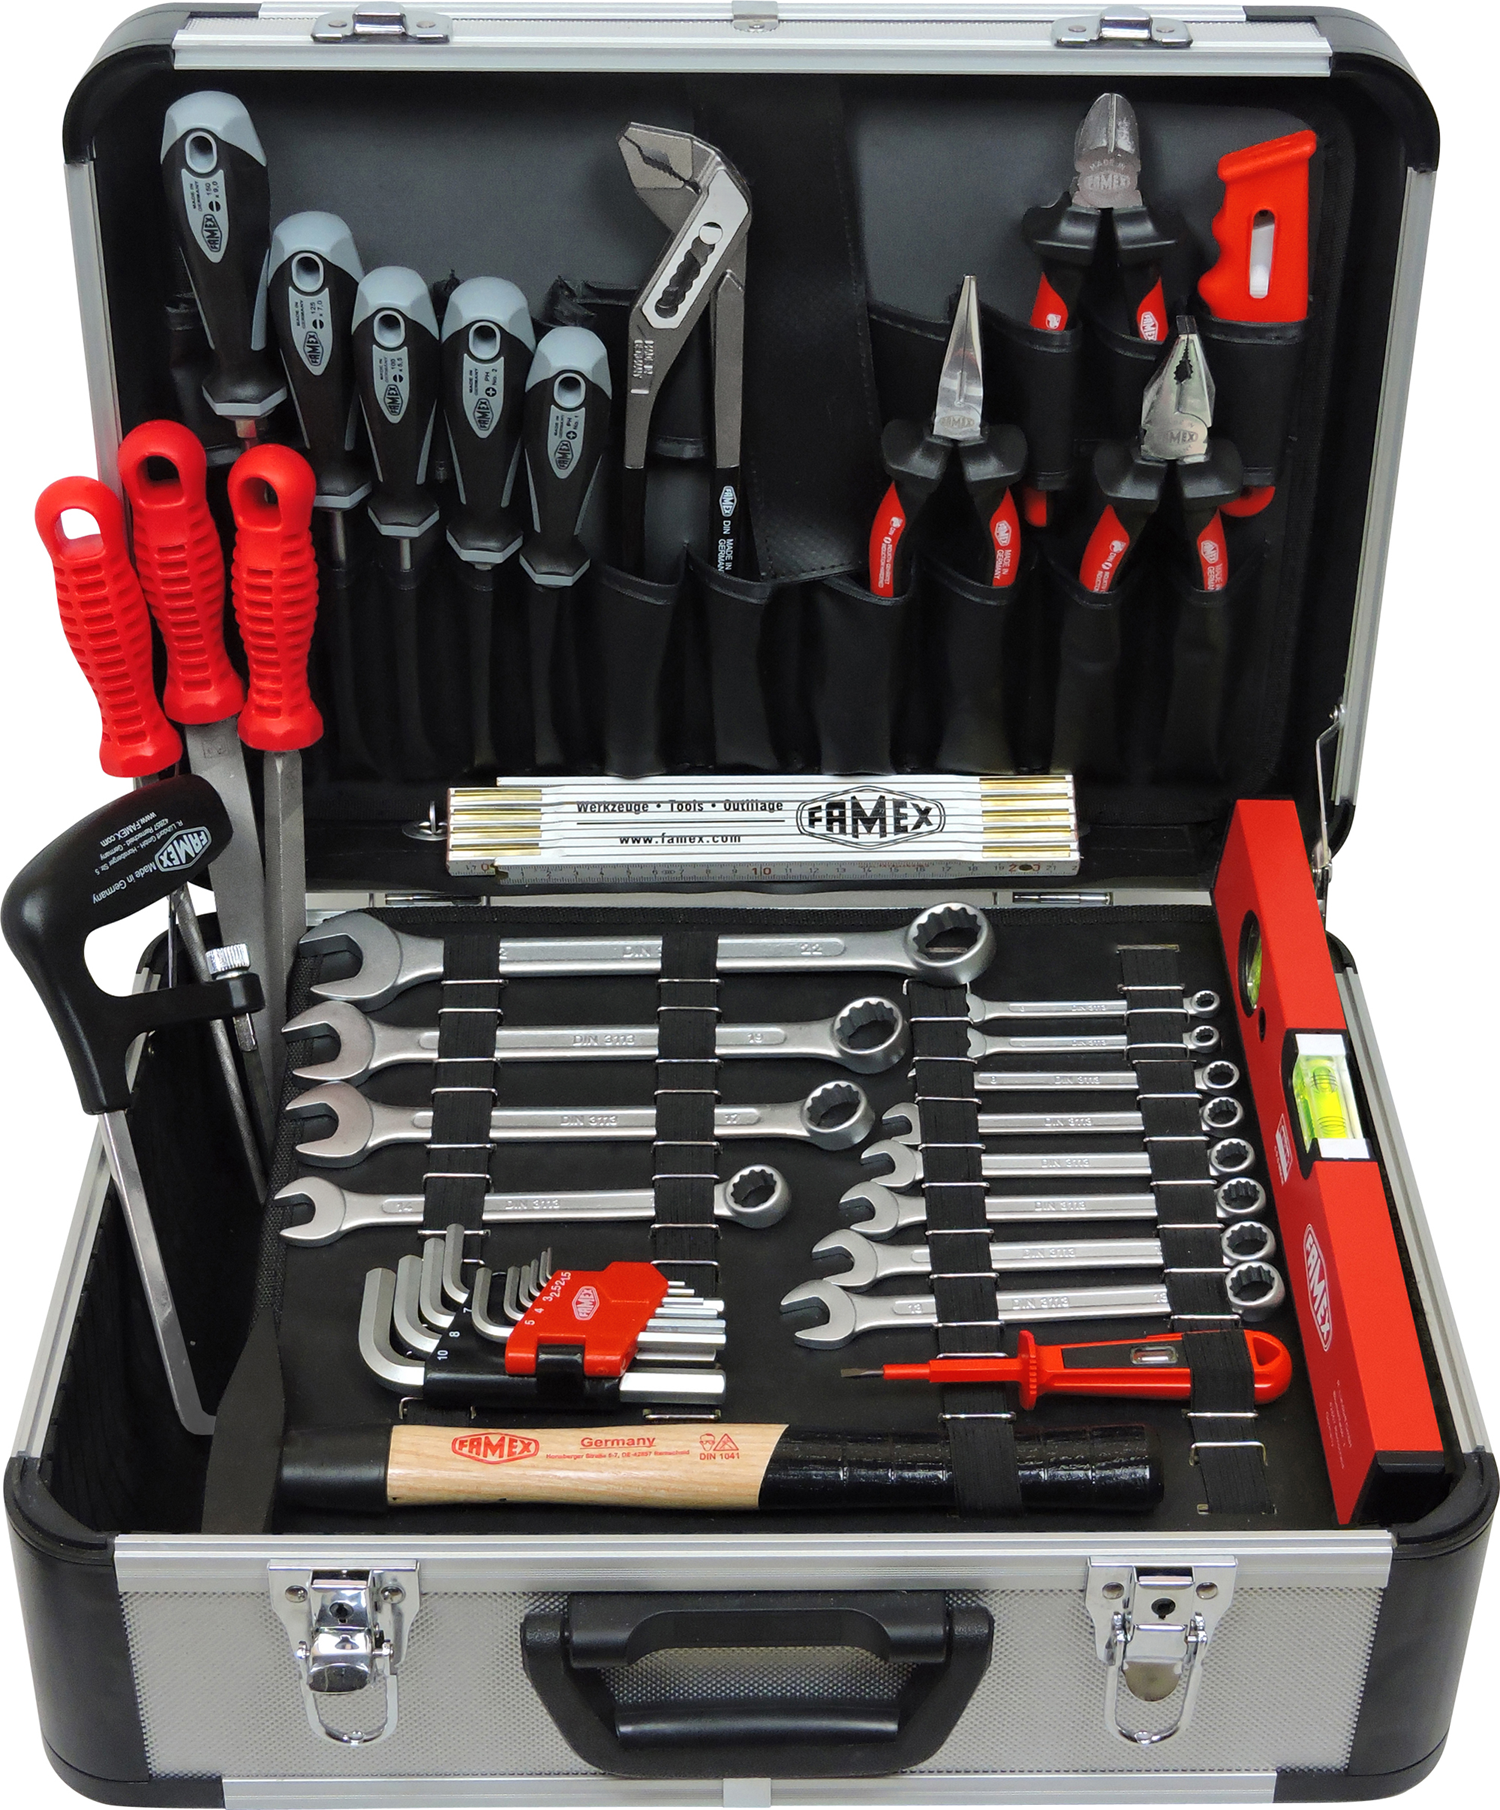 Werkzeuge günstig online kaufen - FAMEX 729-19 High-Quality Tool Set